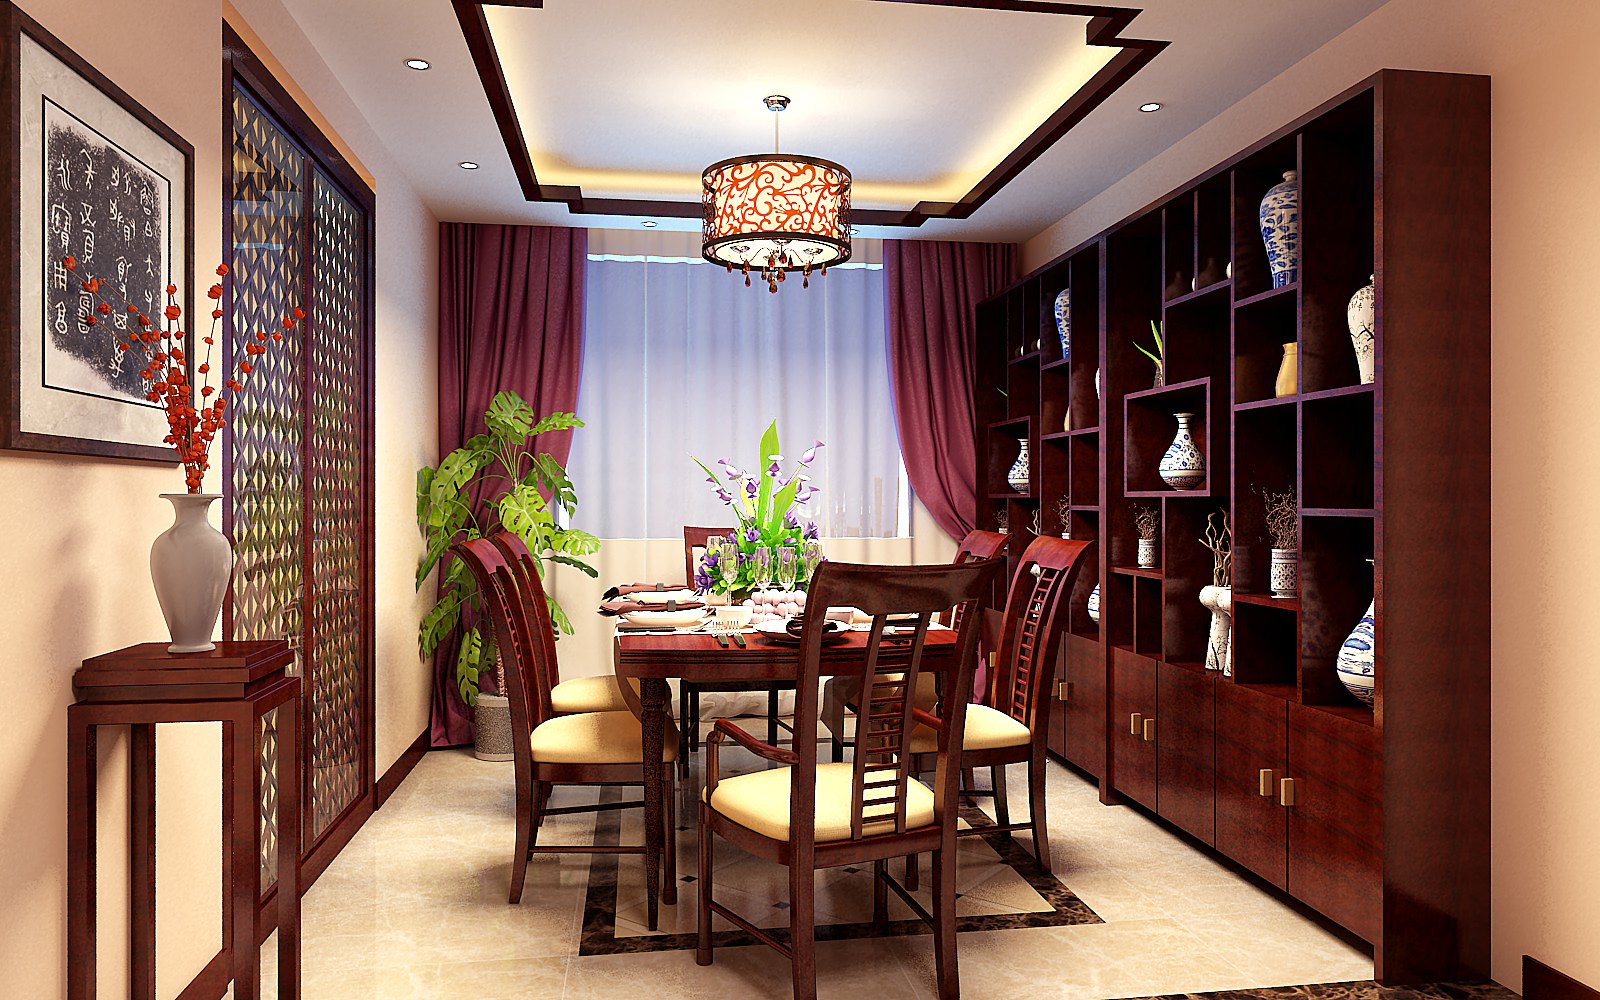 二居 餐厅图片来自北京亚光亚装饰厚宅旗舰店在中式古典两居的分享